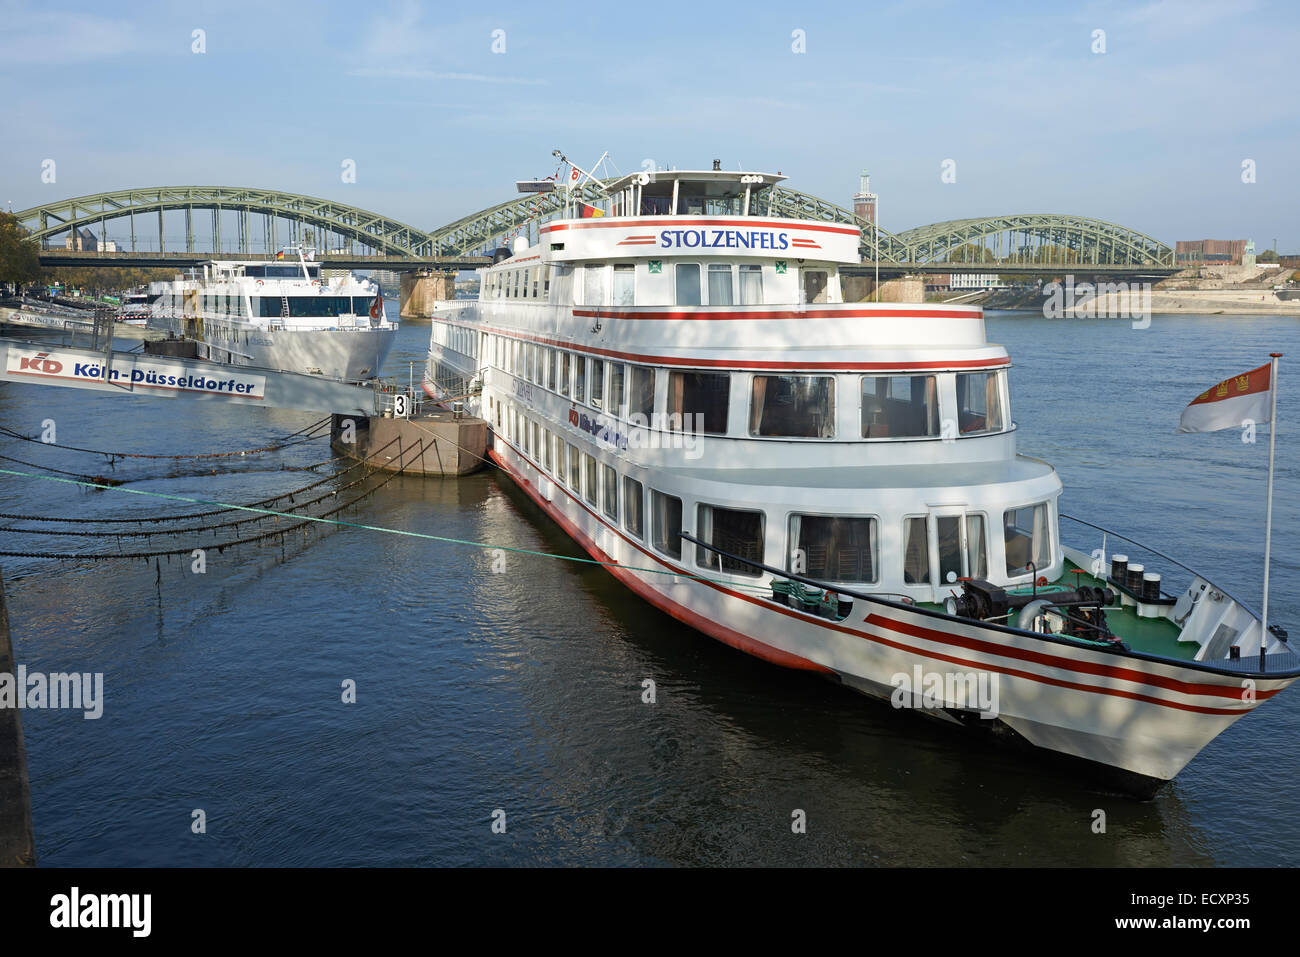 KD Koln-Dusseldorfer cruceros de pasajeros del río Rin, en Colonia, Alemania. Foto de stock